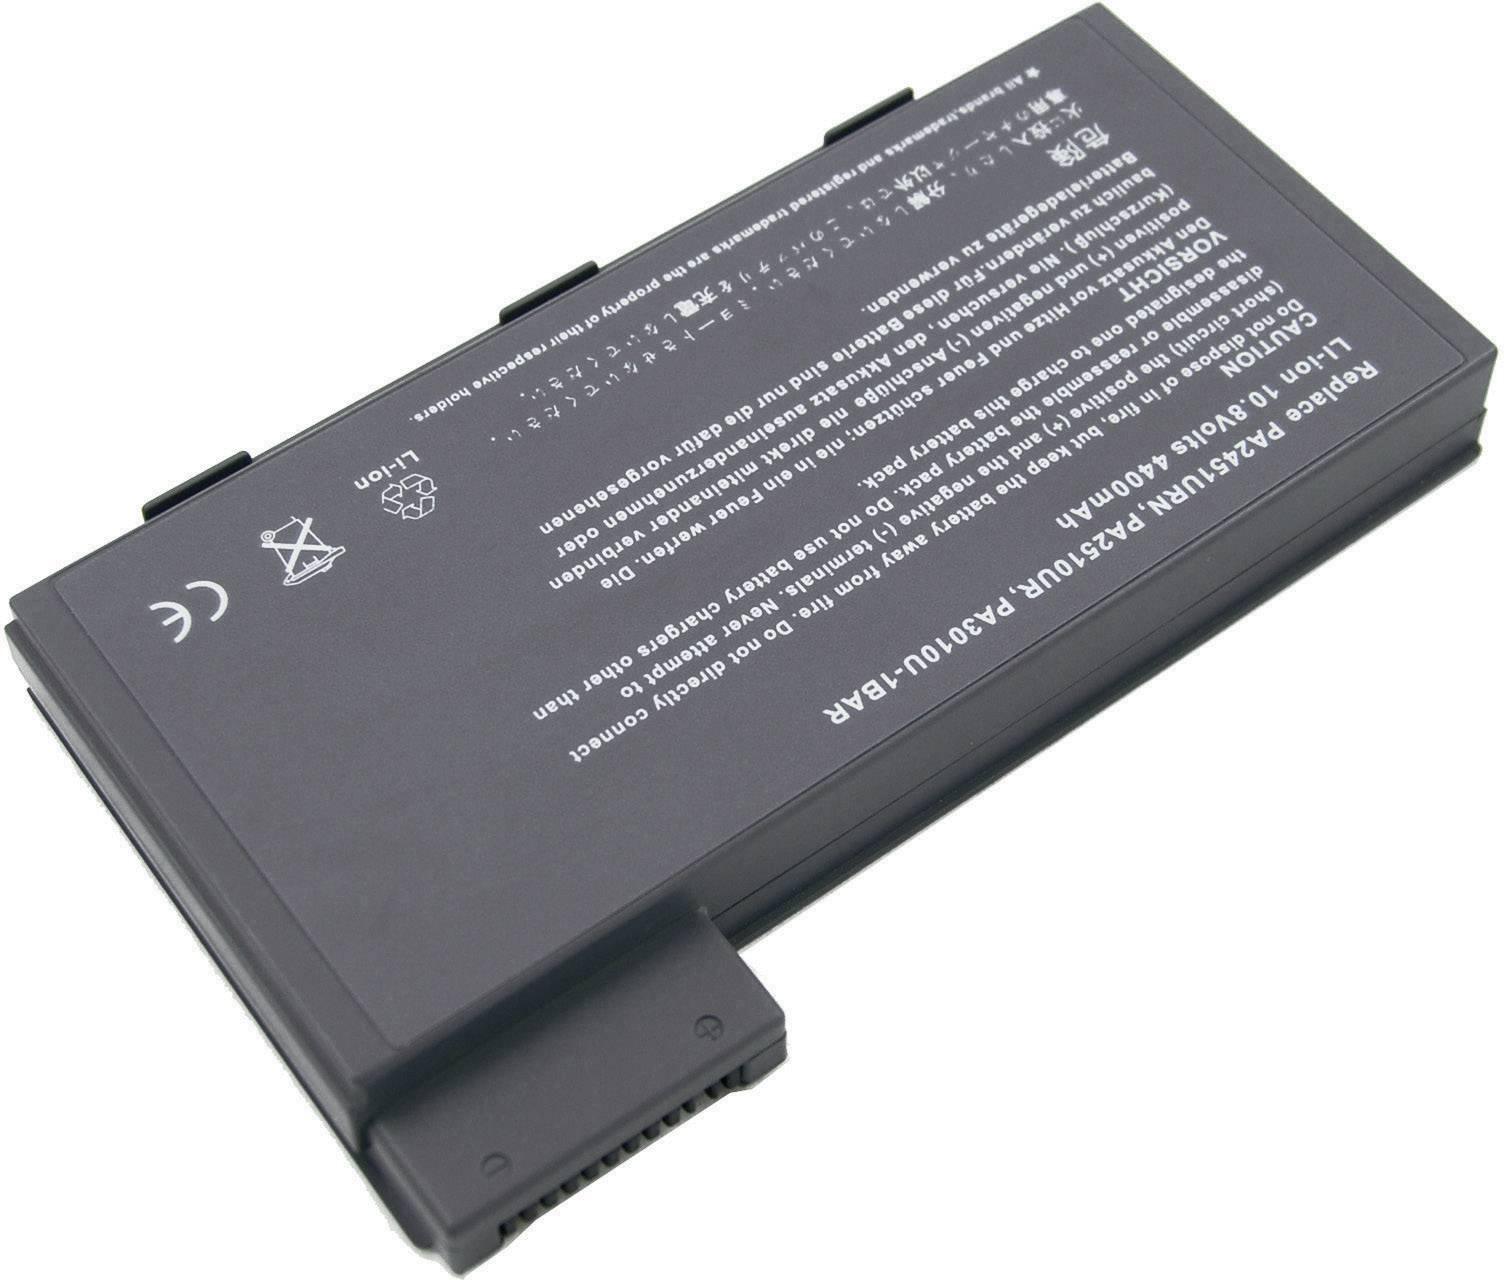 PA2509U Original Laptop Battery For Toshiba B410 PA3010U-1BAR PA2510U